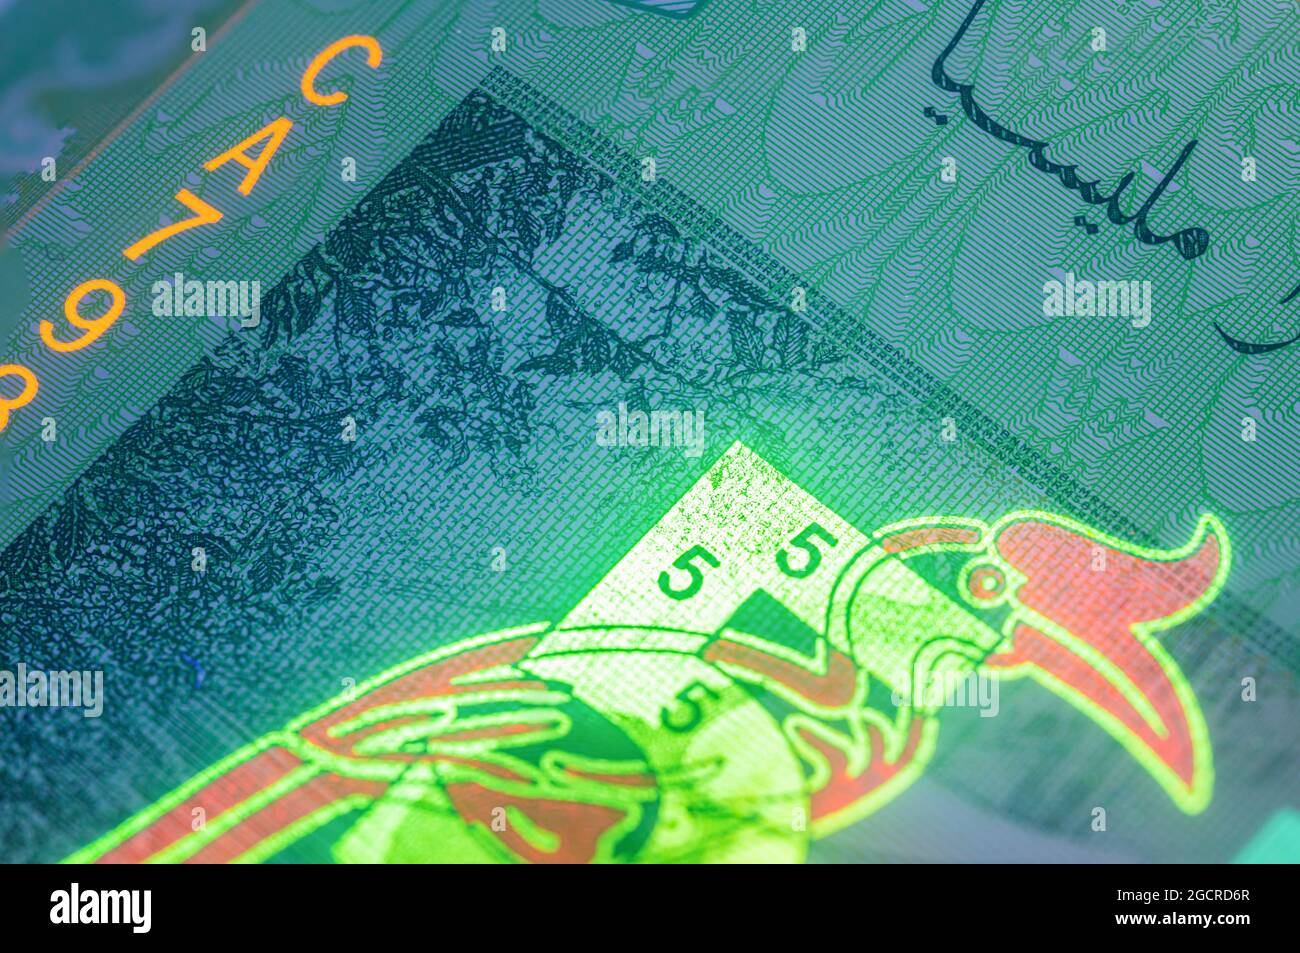 Macro photographie de 5 ringgit malaisien avec lumière de fluor. Gros plan extrême de RM5 Malaisie. Capture nette de l'oiseau Rhinoceros Hornbill sur la banque Banque D'Images